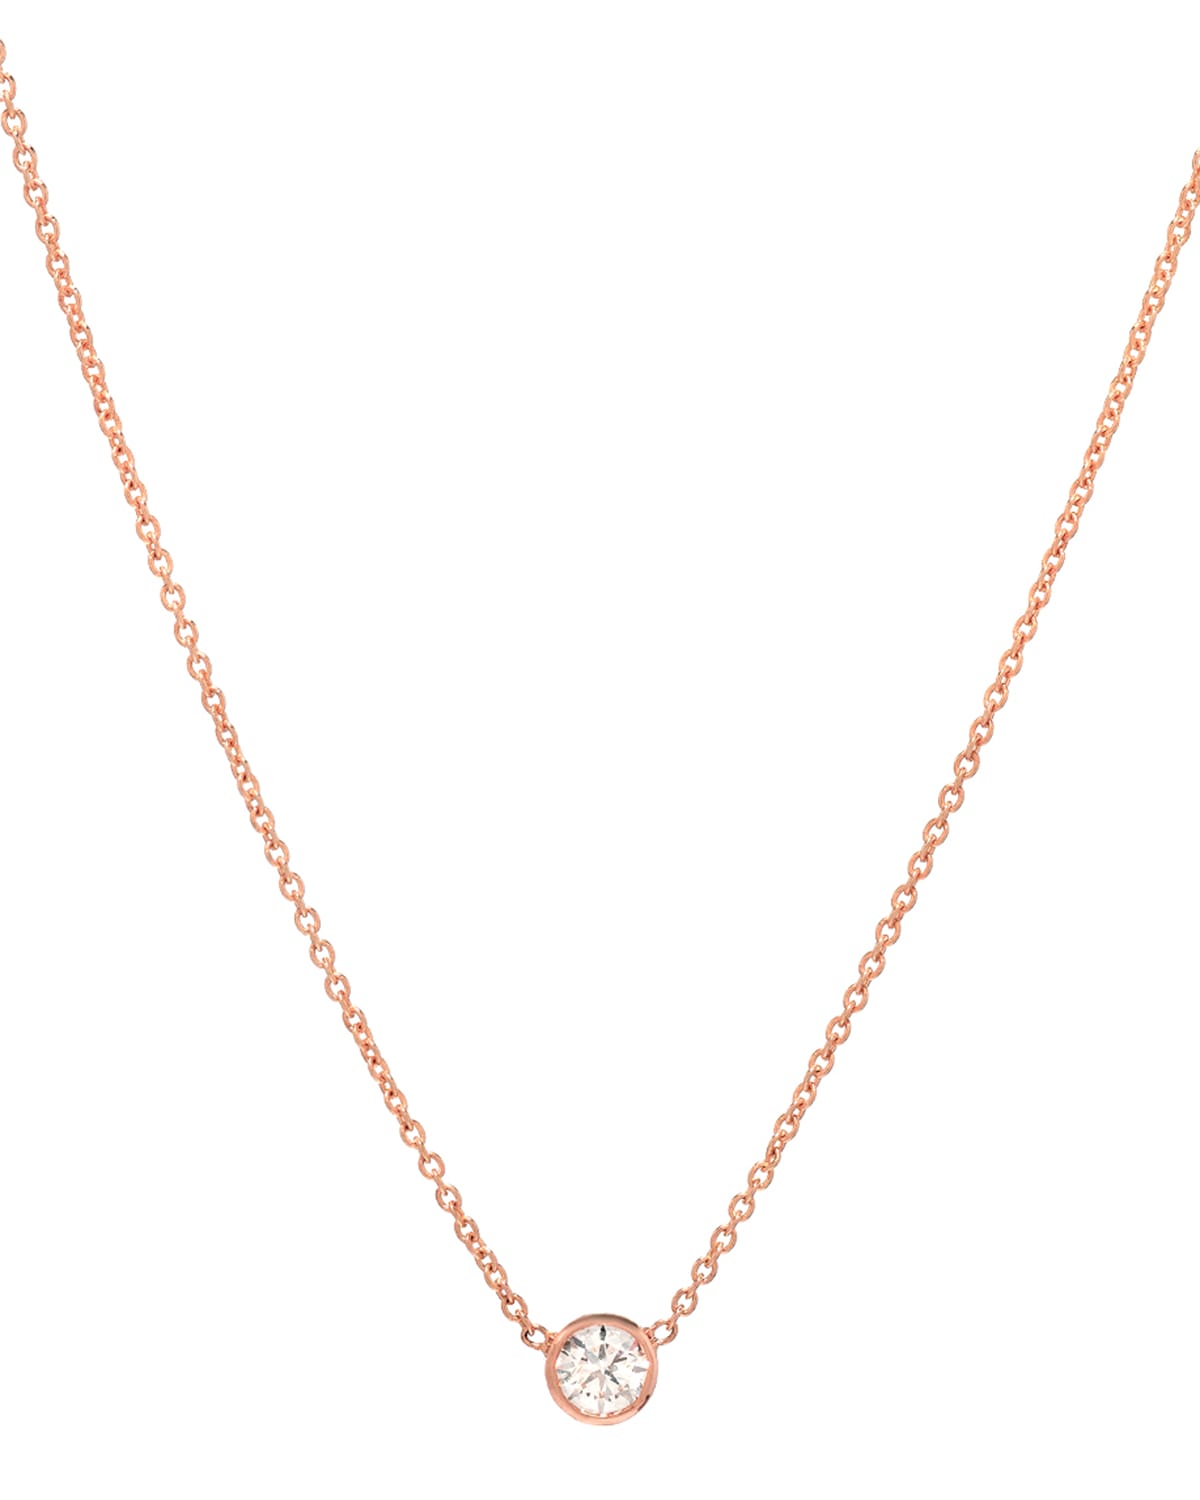 Zoe Lev Jewelry 14k Rose Gold Small Bezel Diamond Necklace